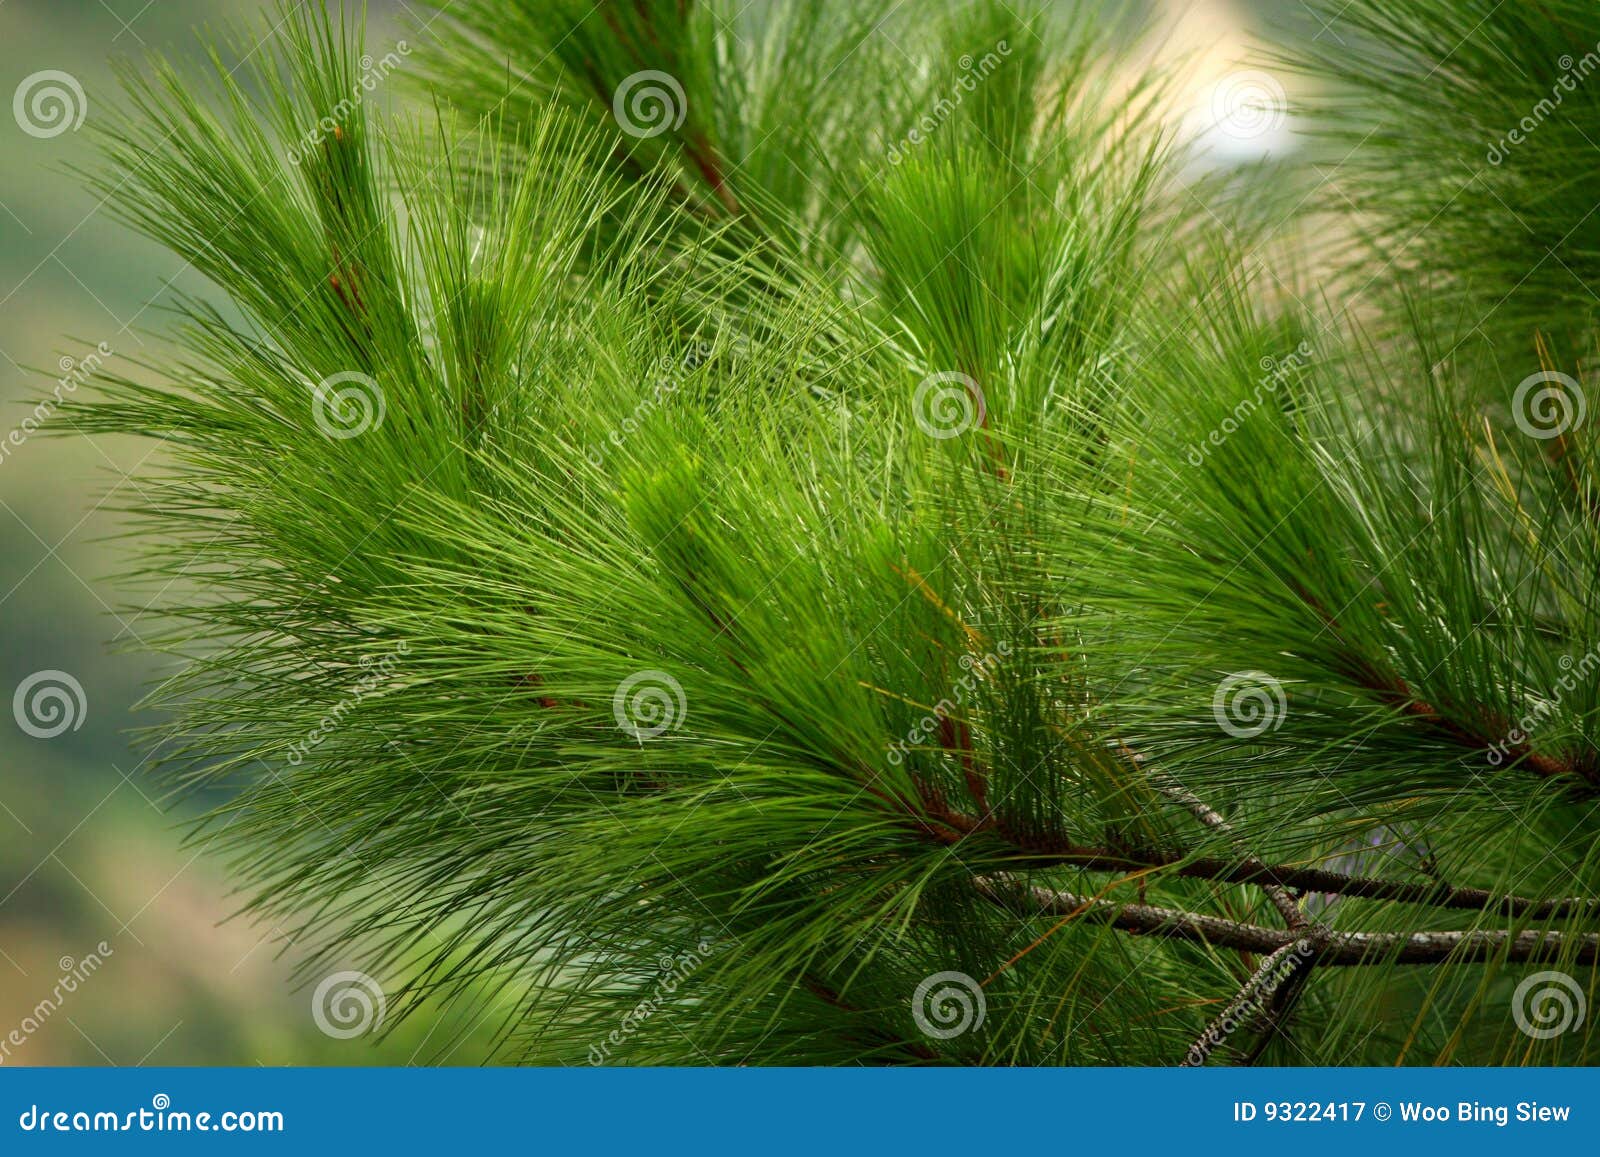 Hojas del árbol de pino imagen de archivo. Imagen de tropical - 9322417